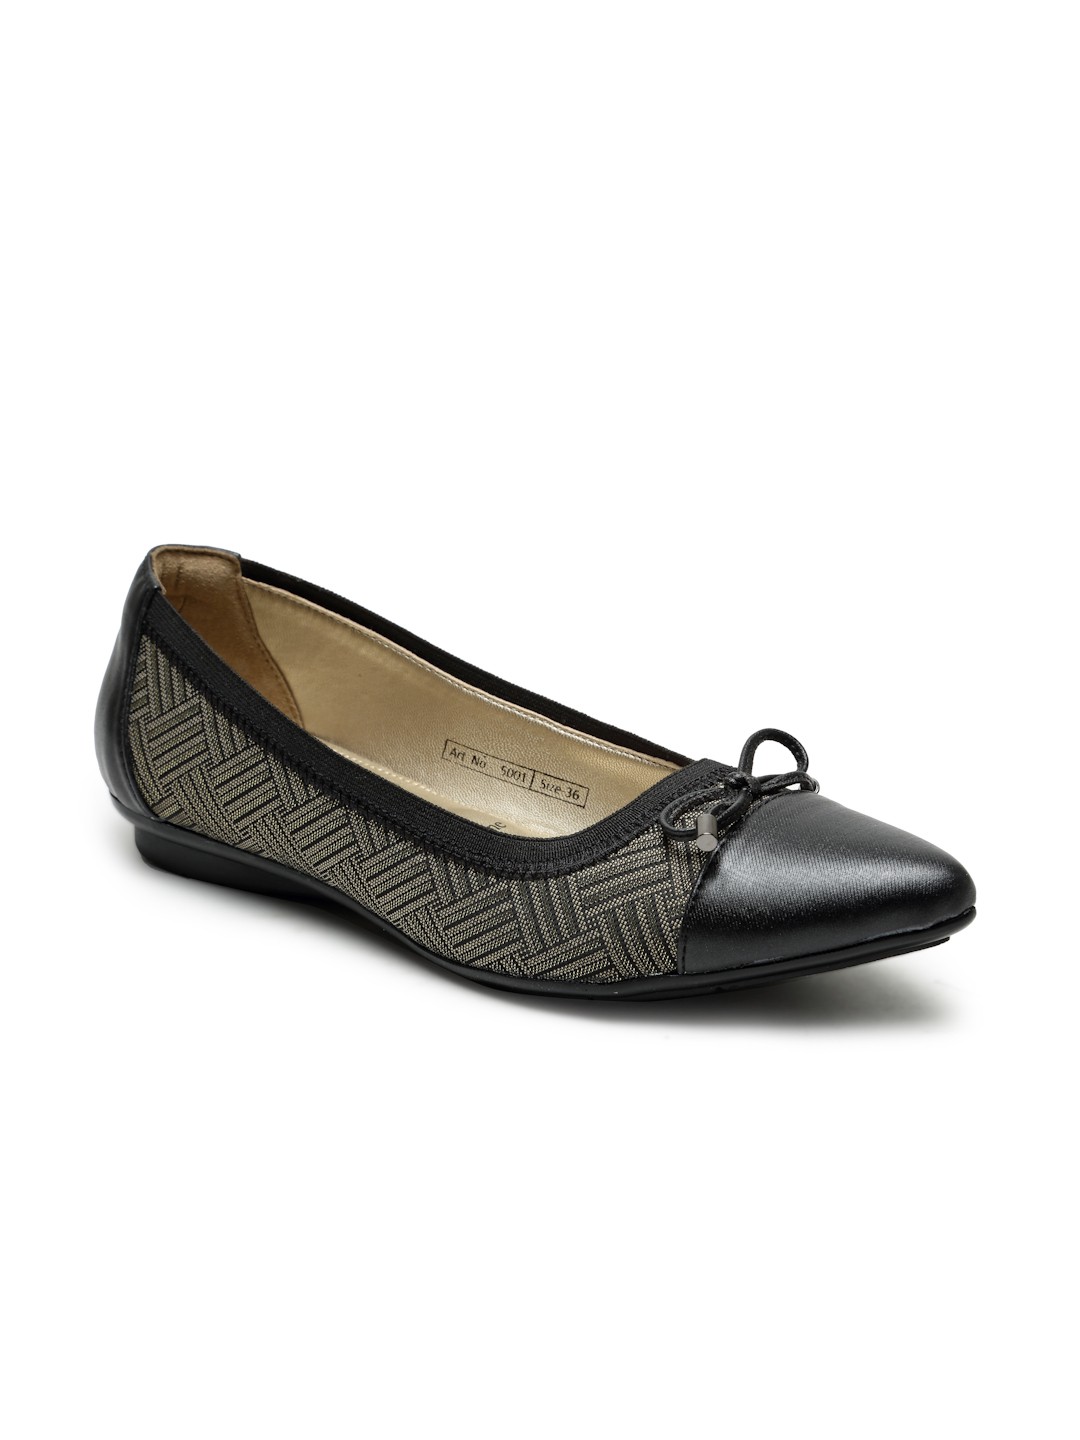 Buy Von Wellx Germany Comfort Women's Black Casual Shoes Lisa Online in Seemandhra